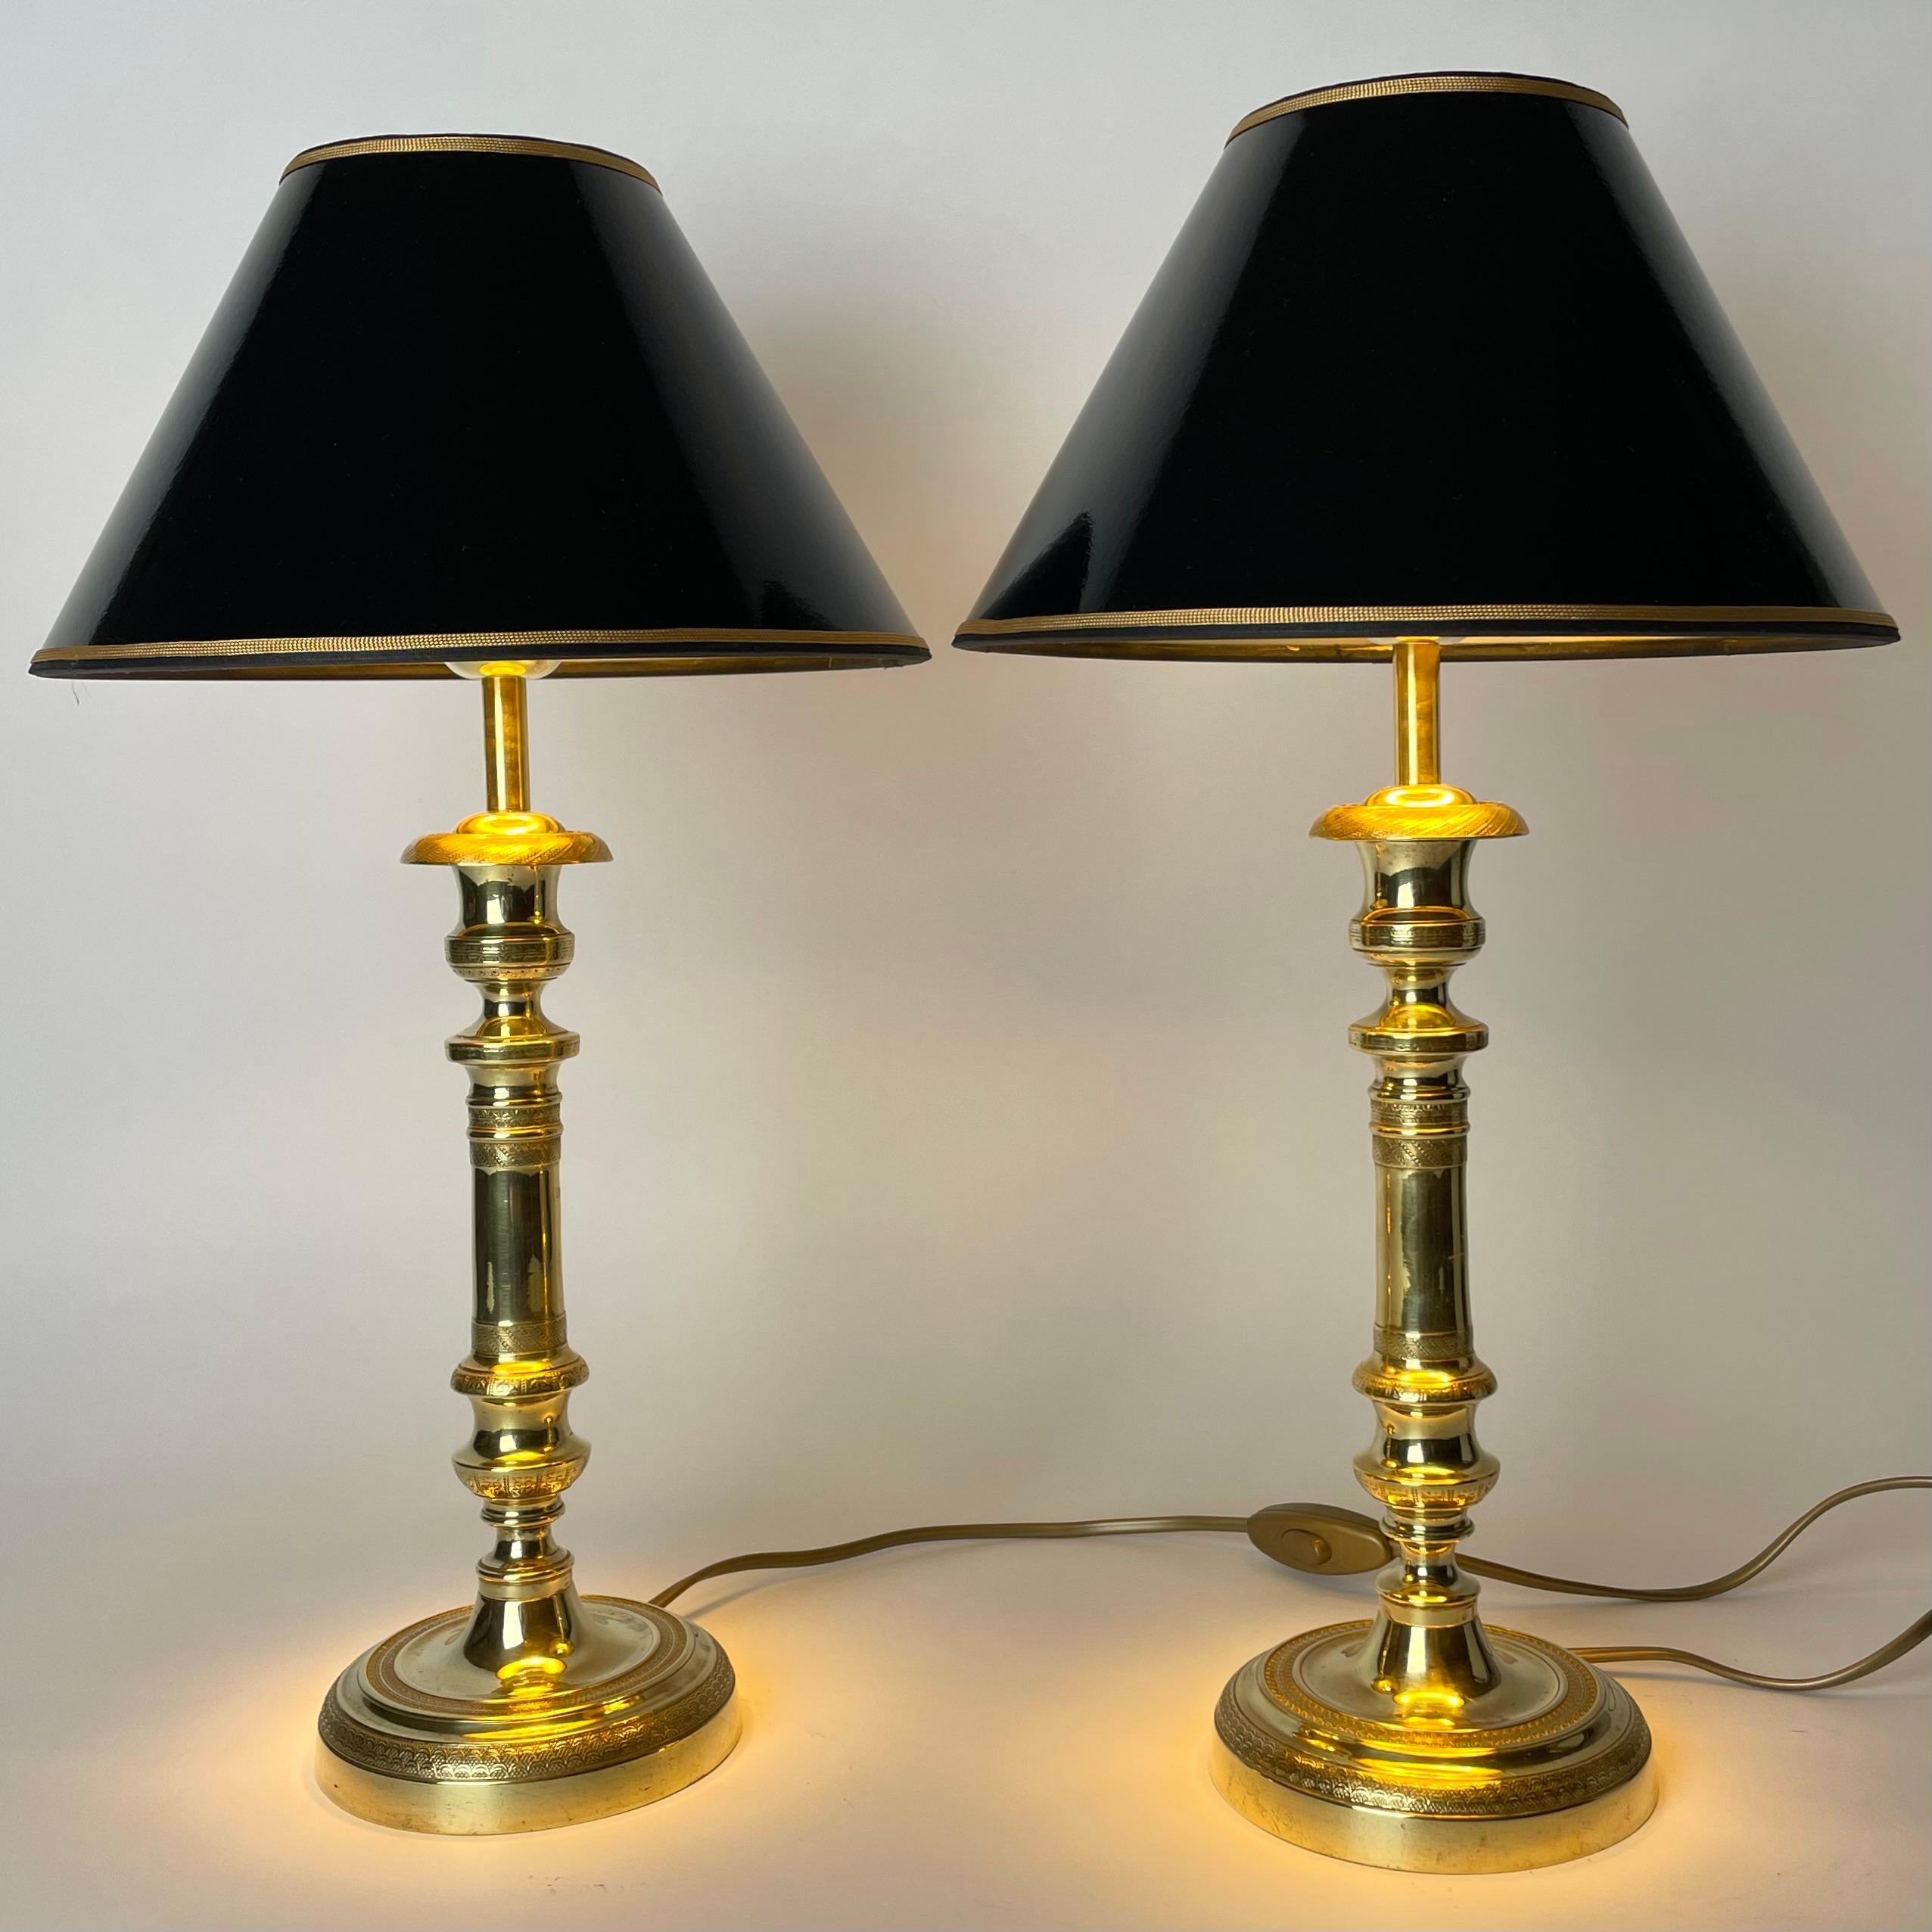 Elegantes Paar Empire-Tischlampen in Bronze. Ursprünglich ein Paar Empire-Leuchter aus den 1820er Jahren, die Anfang des 20. Jahrhunderts zu Tischlampen umfunktioniert wurden.

Neu verkabelte Elektrizität 

Neue Lampenschirme aus schwarzem Lack mit